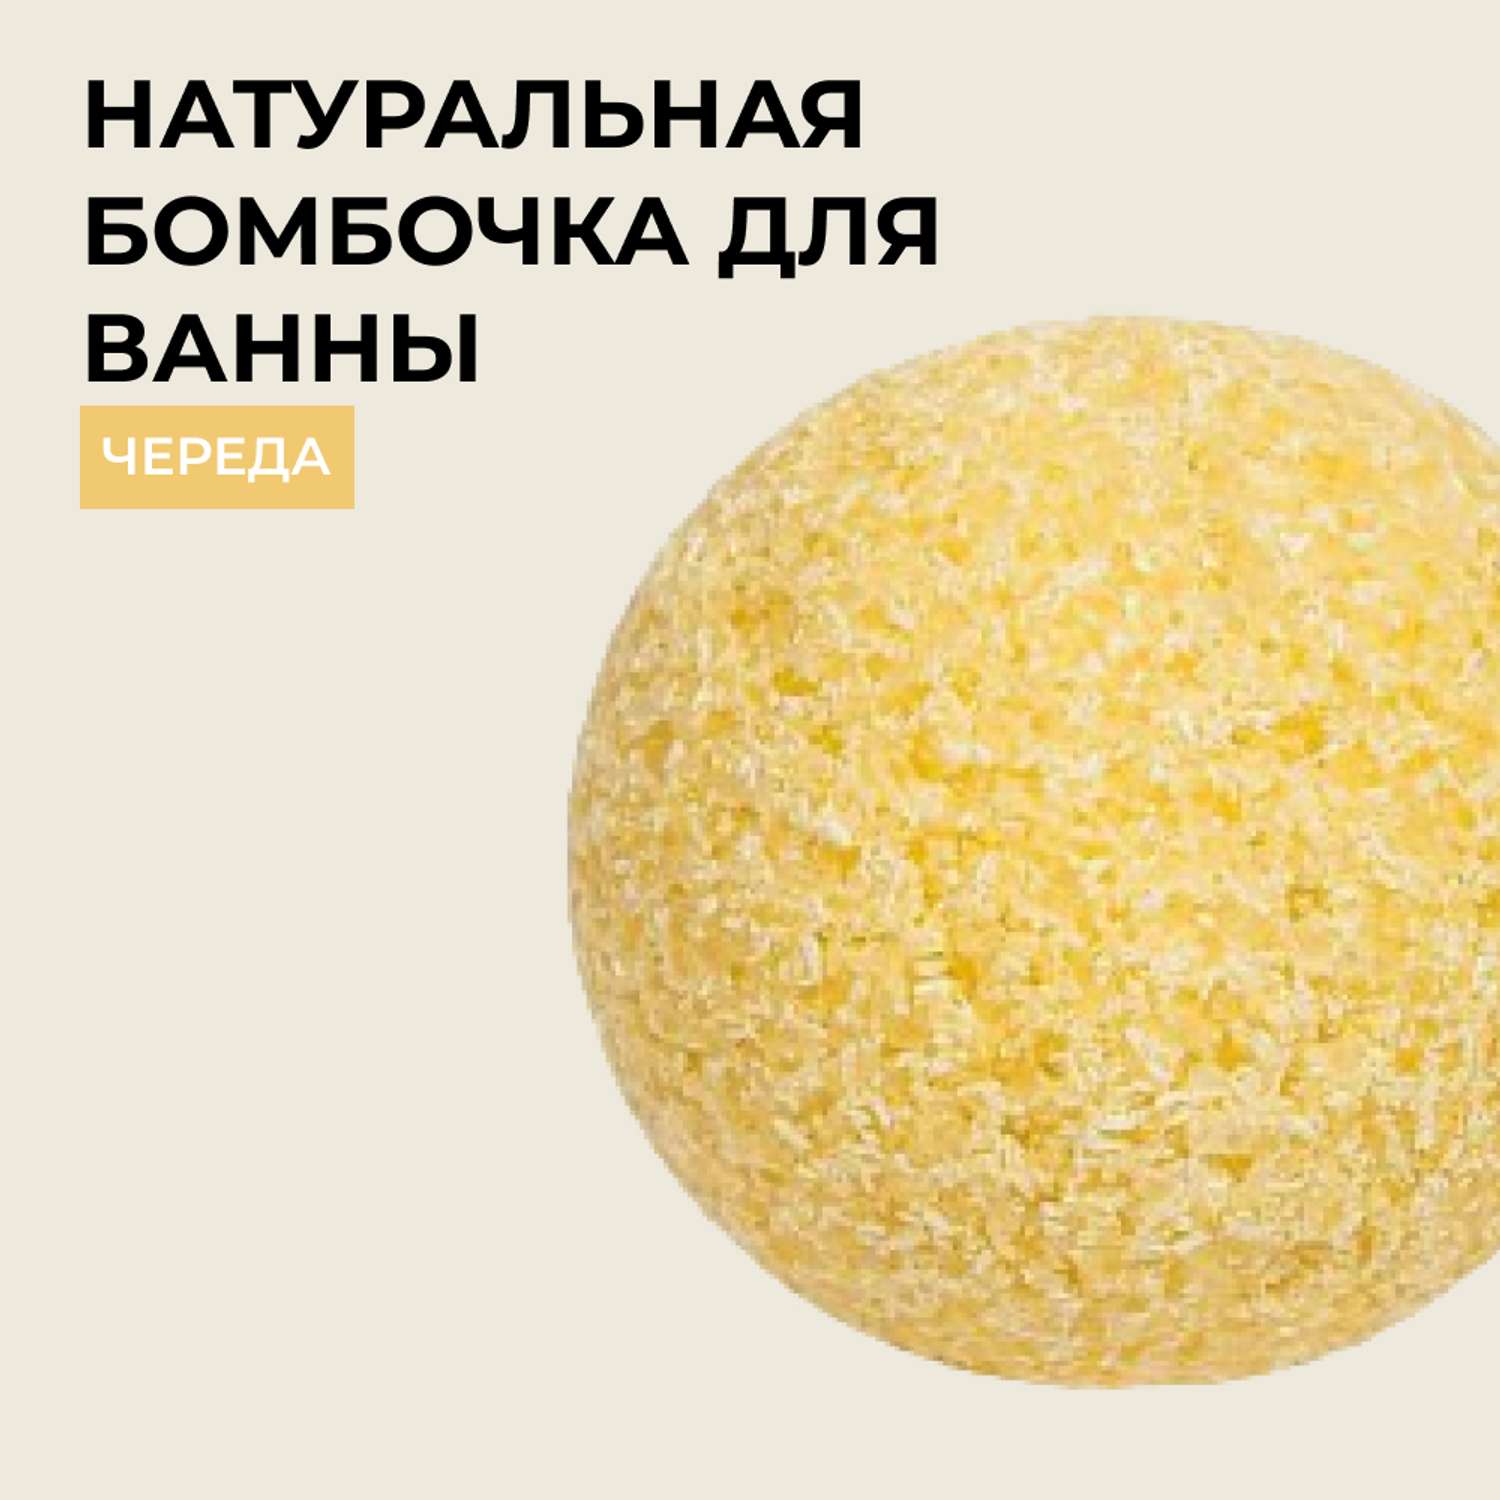 Бомбочка для ванны Siberina натуральная «Череда» с эфирными маслами 80 гр - фото 1